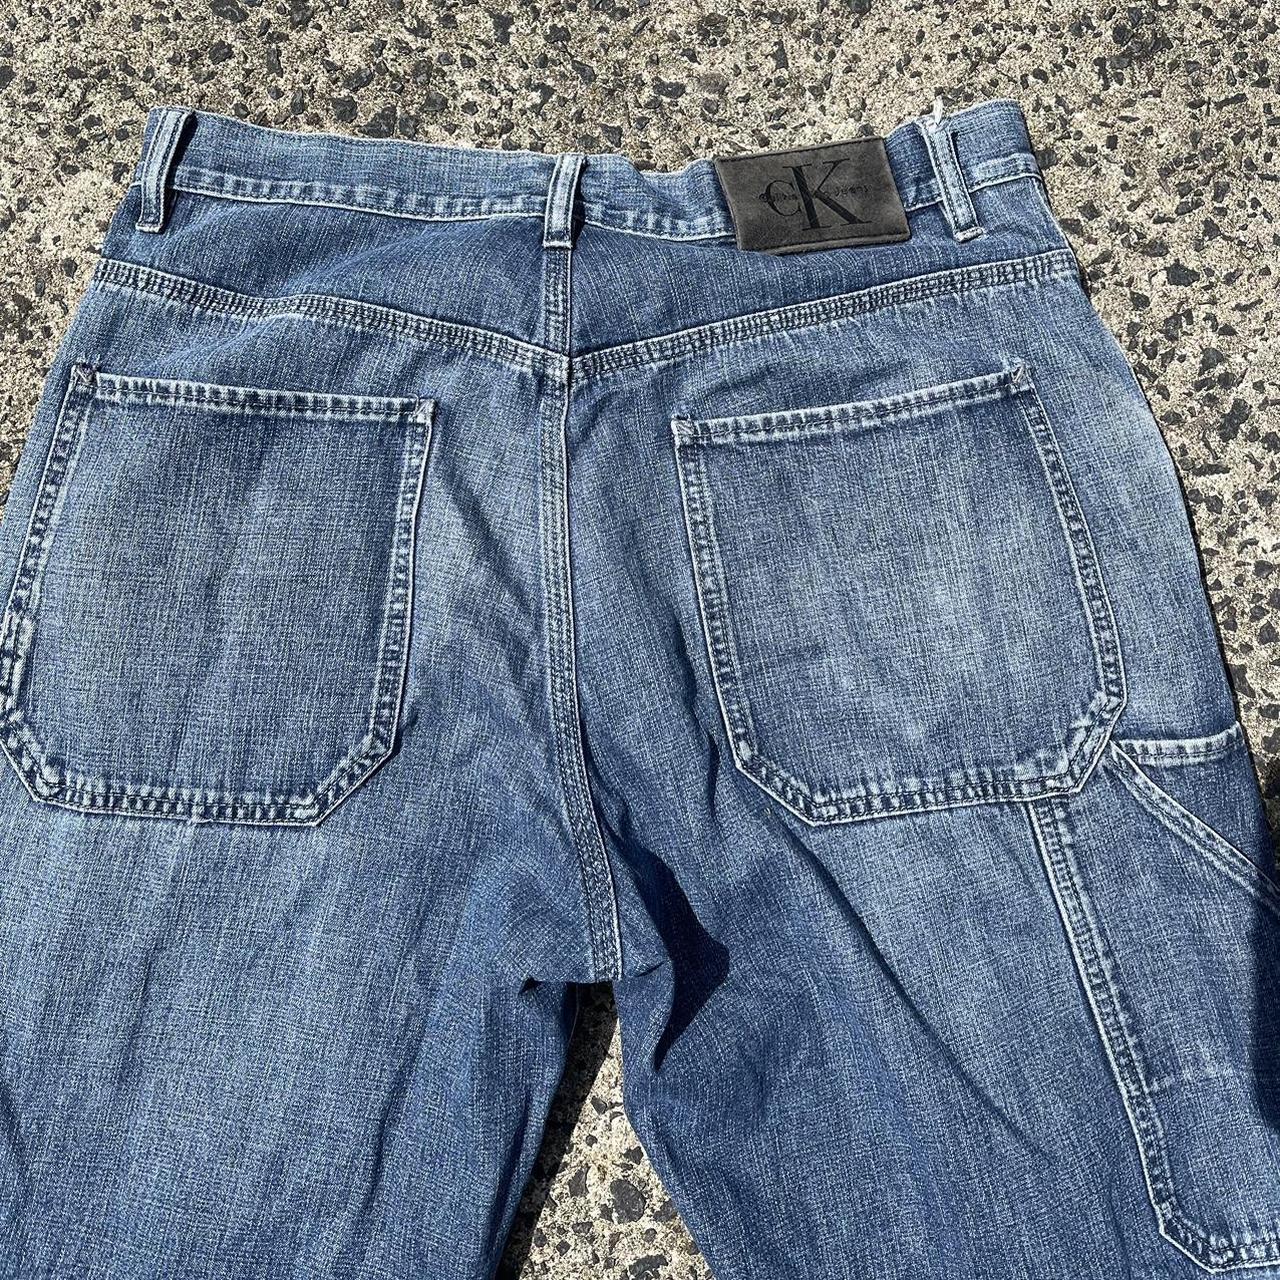 Vintage Calvin Klein Carpenter Jeans, Indigo, Size... - Depop